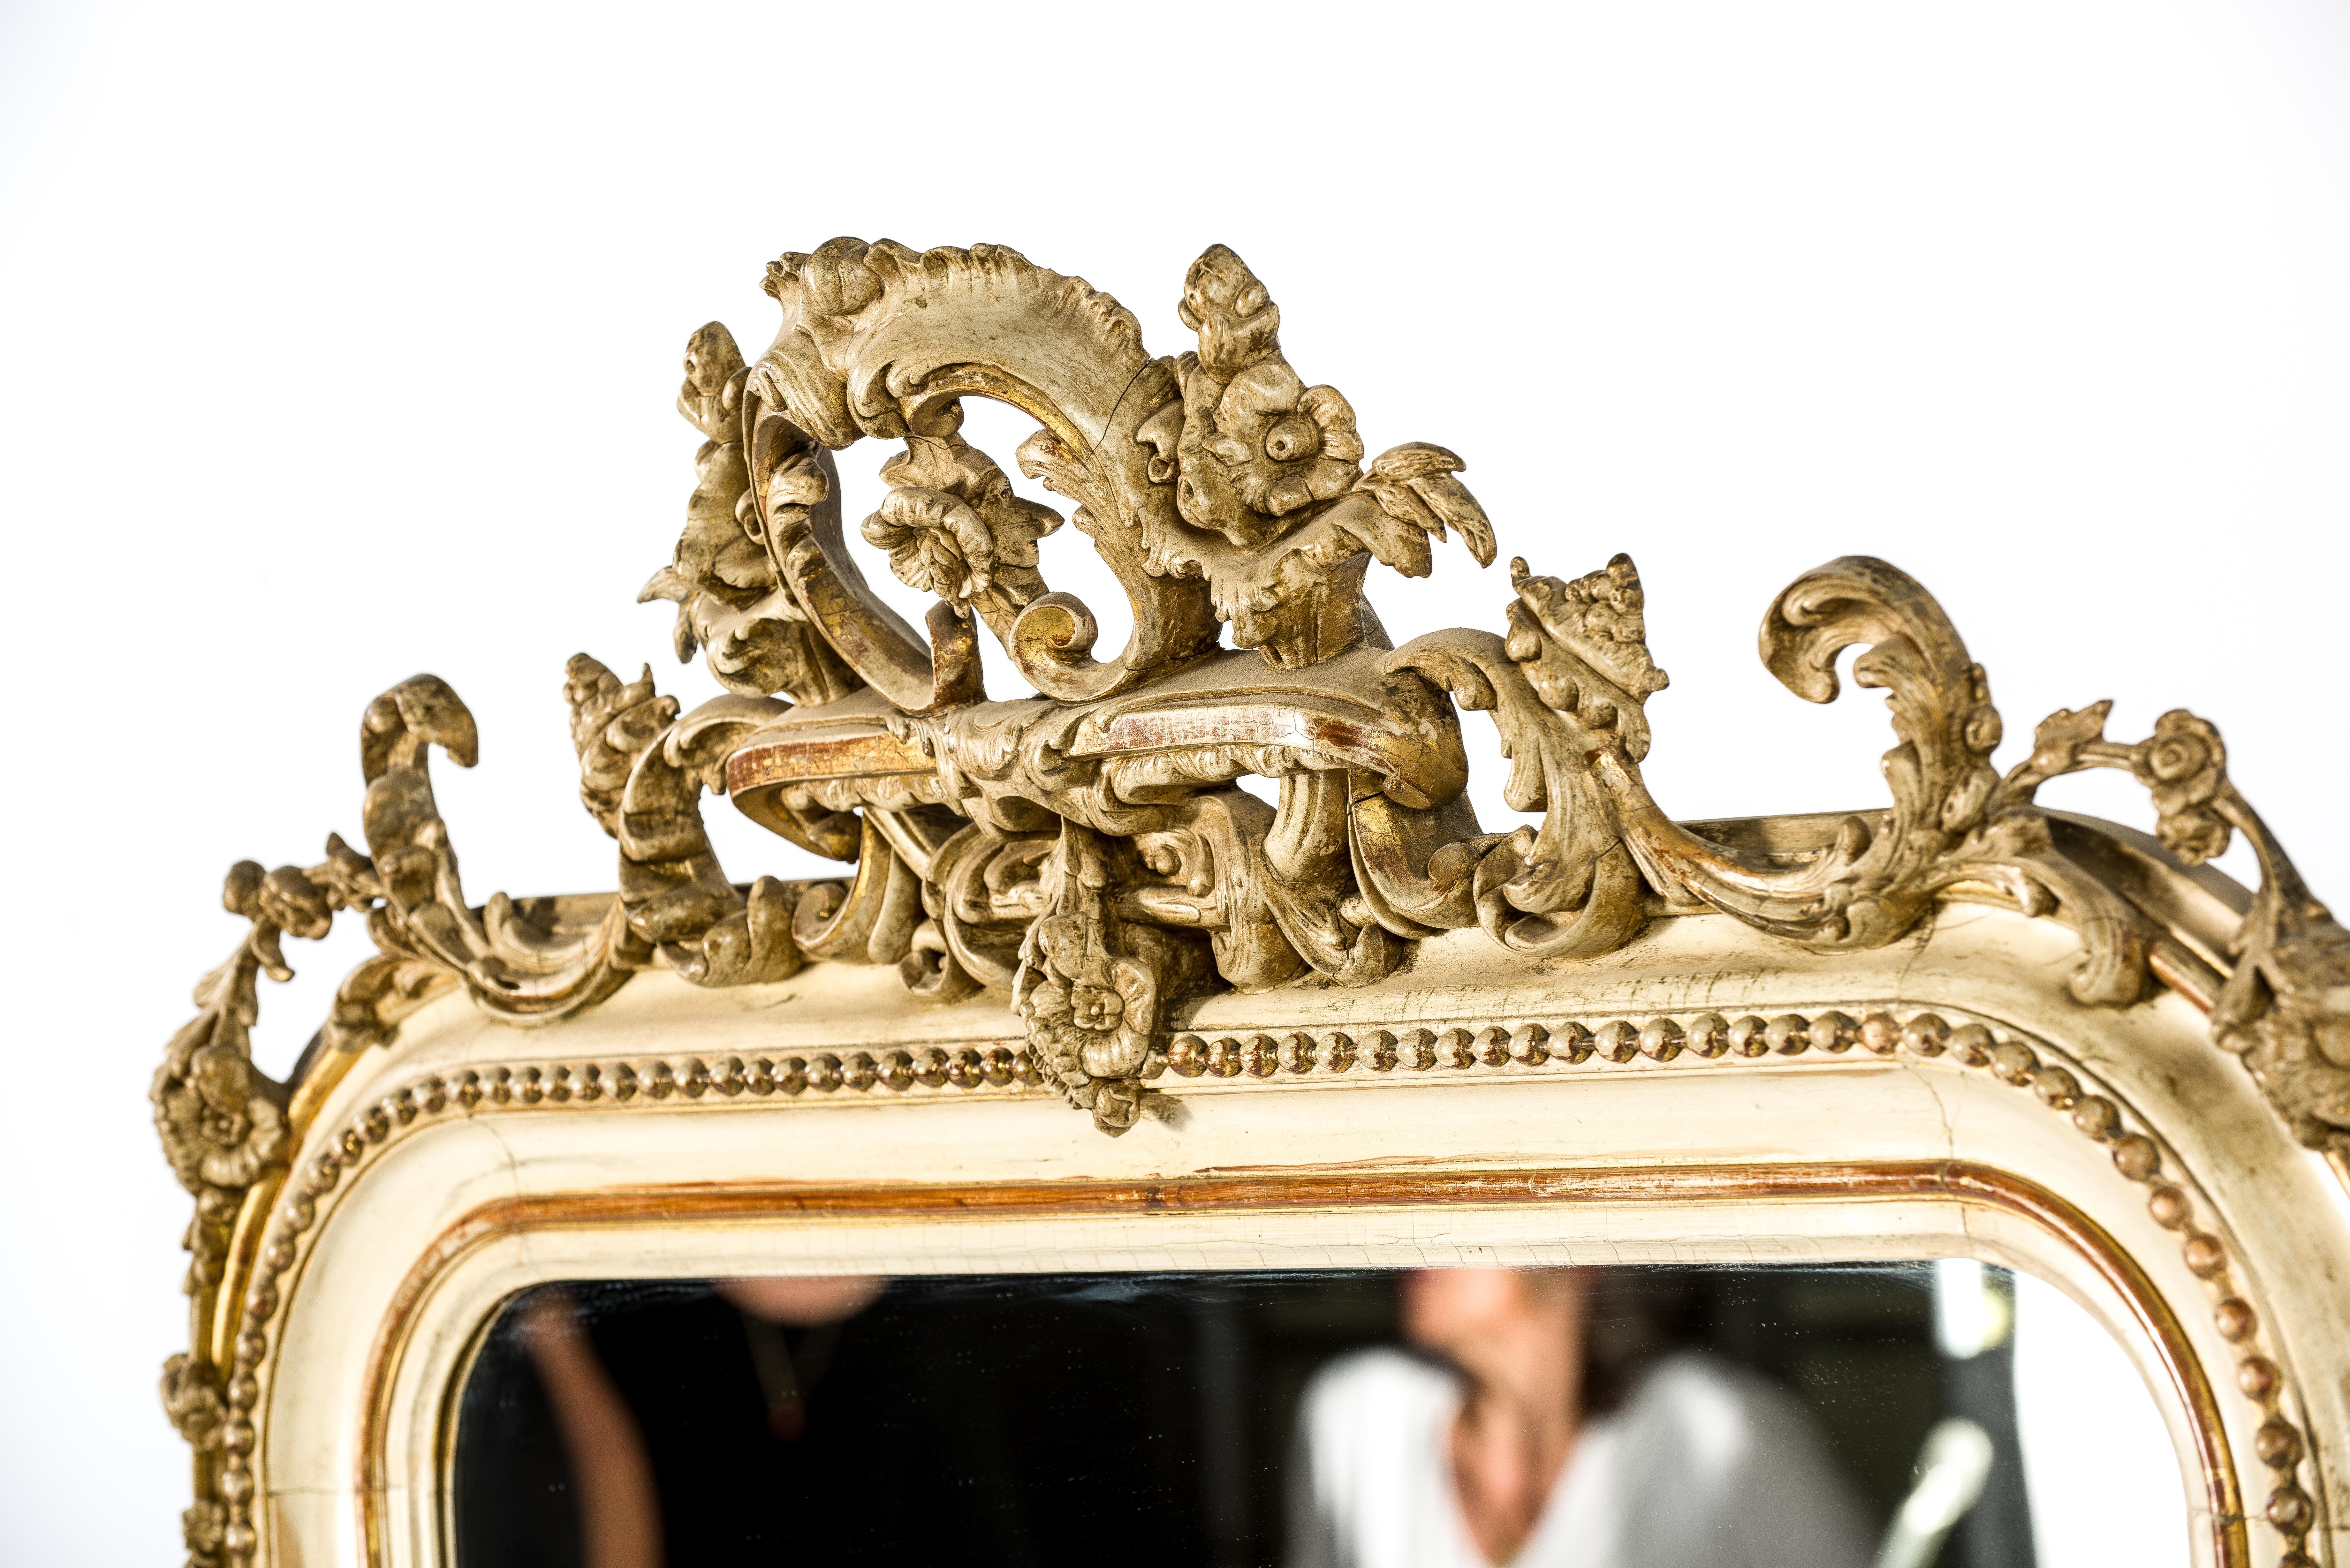 Ein schöner antiker Spiegel, der aus Frankreich stammt, um 1860. Der Spiegel hat die für französische Louis Philippe-Spiegel typischen abgerundeten oberen Ecken. Der Spiegel hat eine reichhaltige und detailreiche Verzierung in Form eines Wappens und